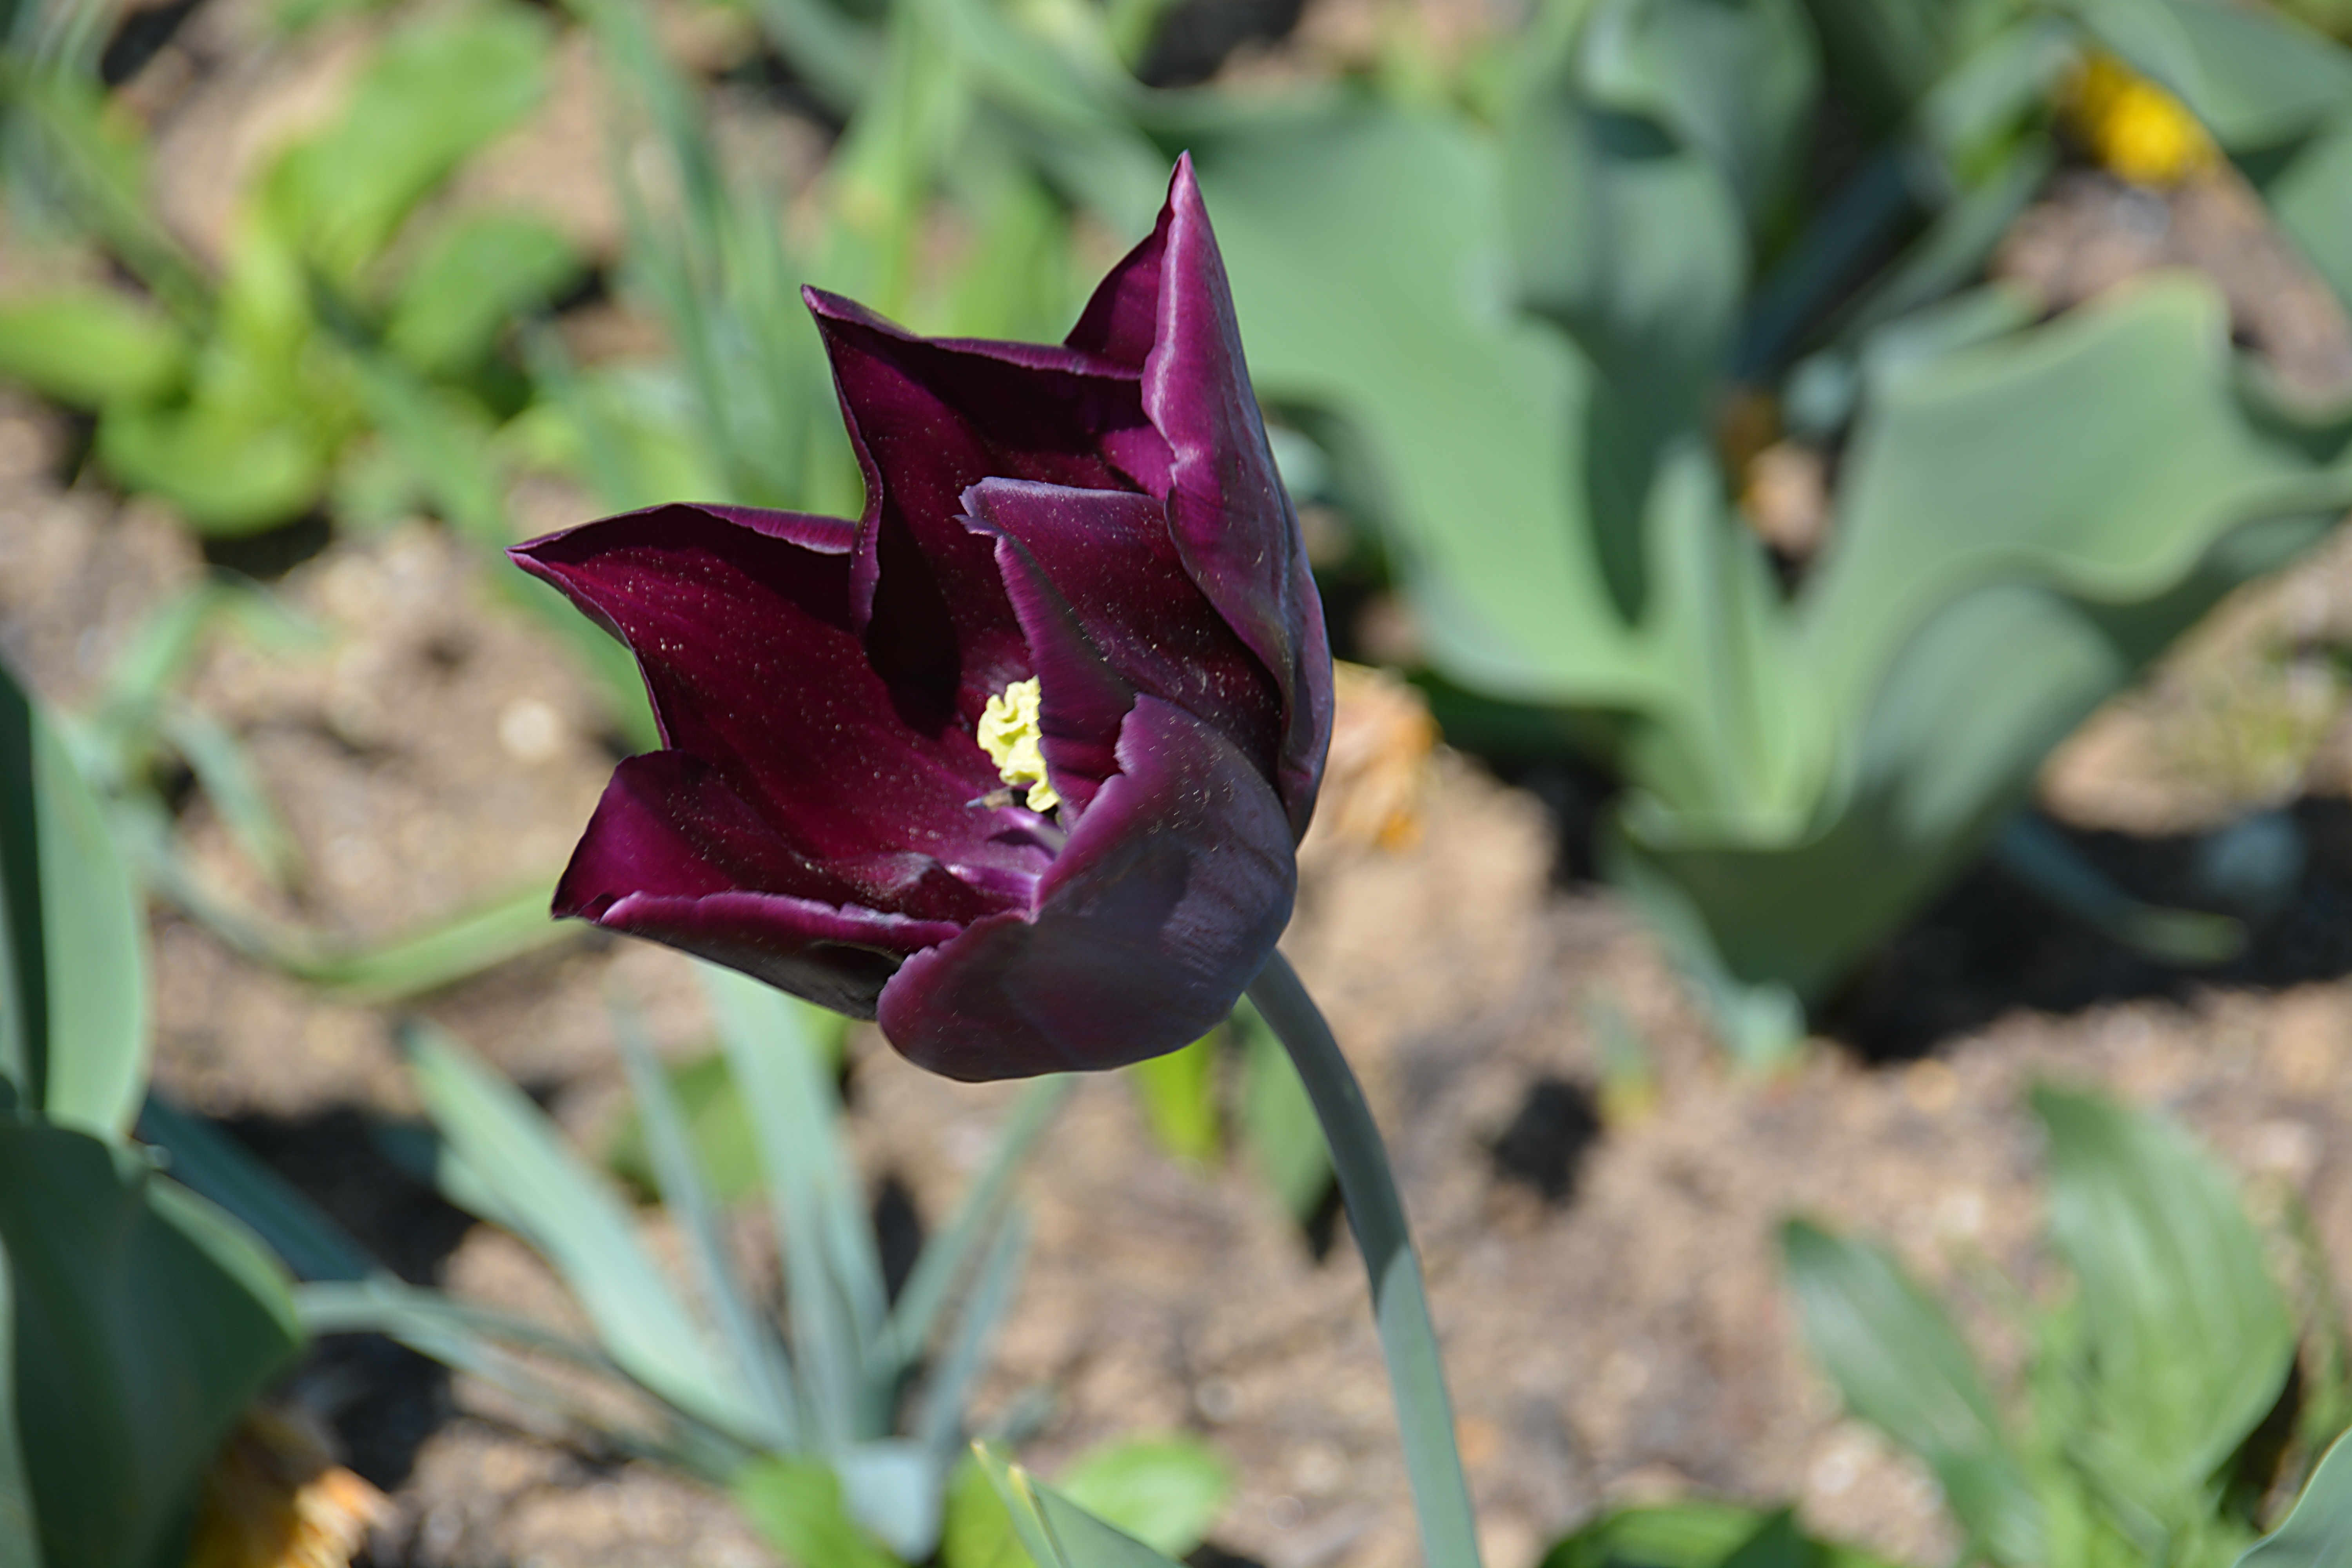 dark pink tulip